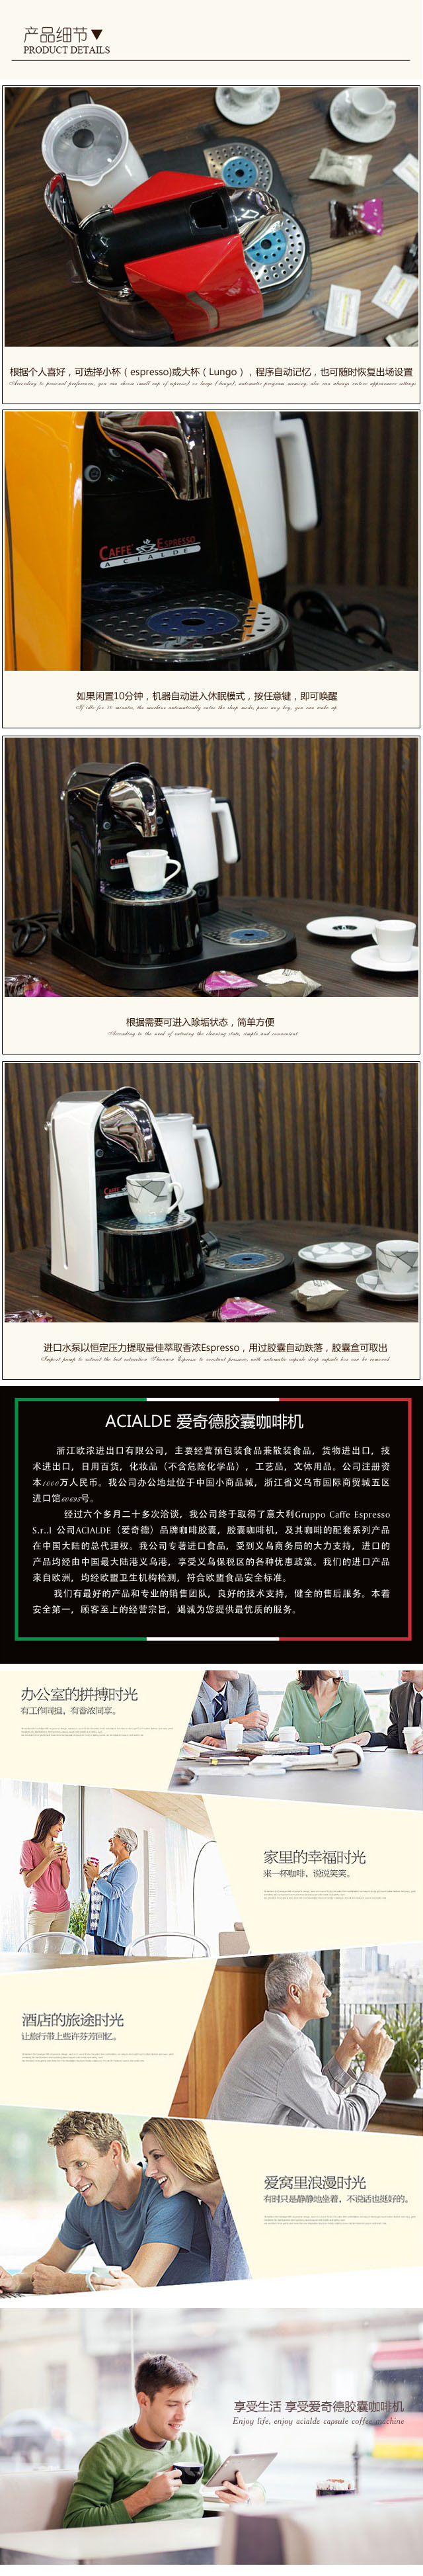 批发意大利胶囊咖啡机 外贸办公室商用奶泡机便捷半自动咖啡机